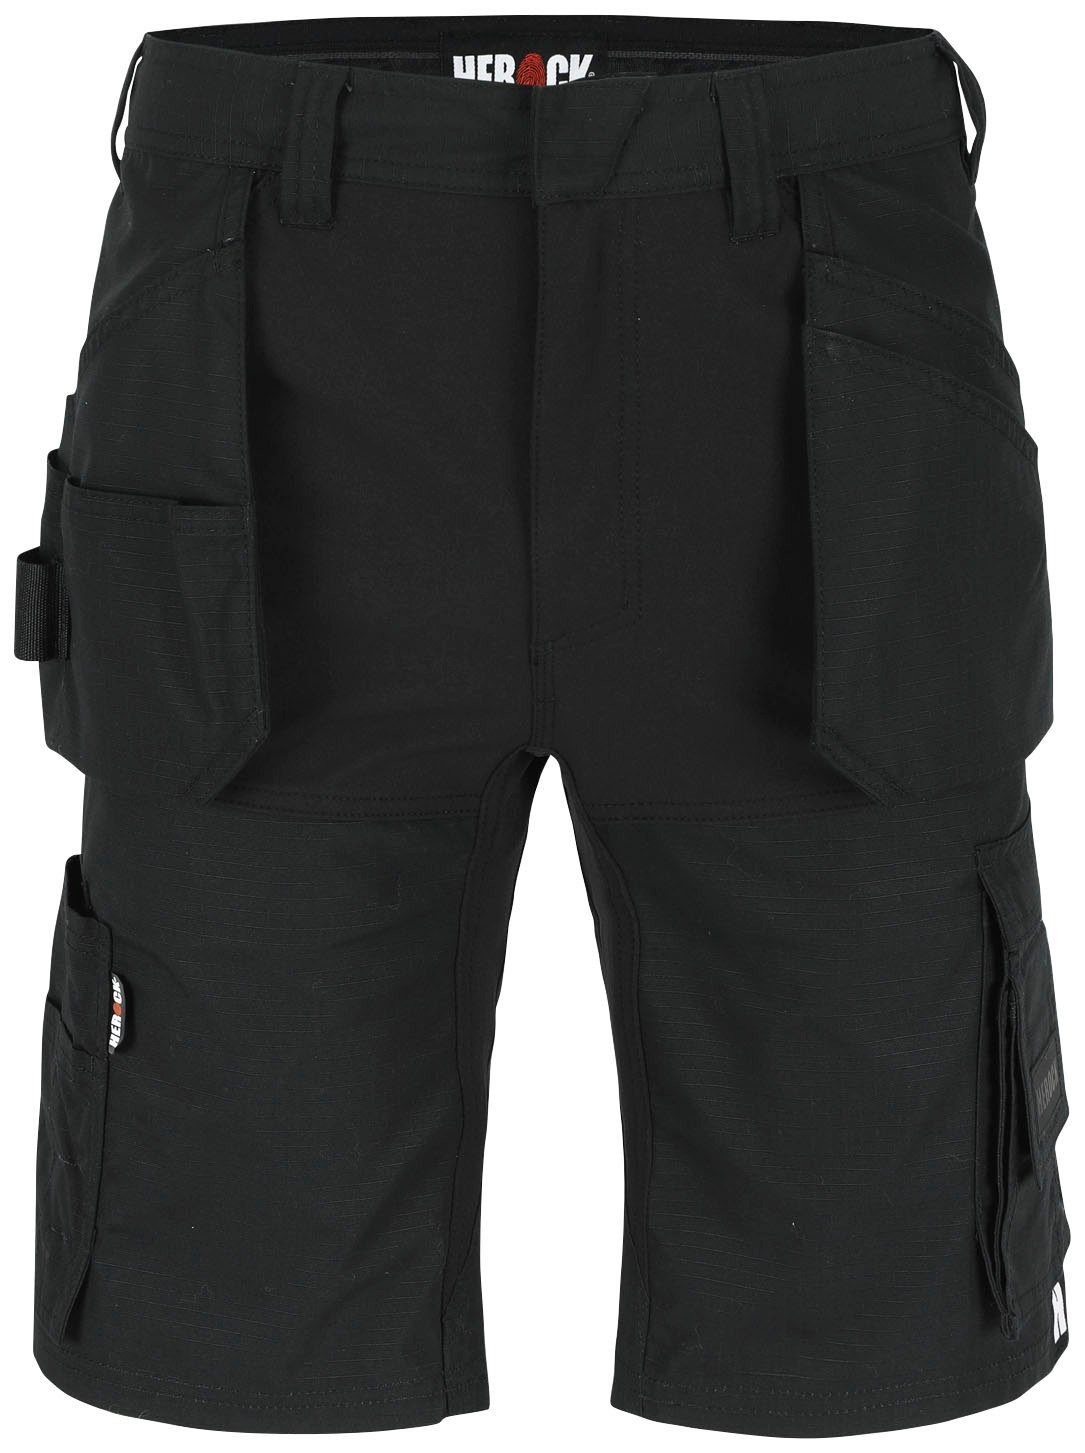 Herock Bermudas Speri Multi-Pocket, feste Nageltaschen, 4-Wege-Stretch, hoher Komfort schwarz